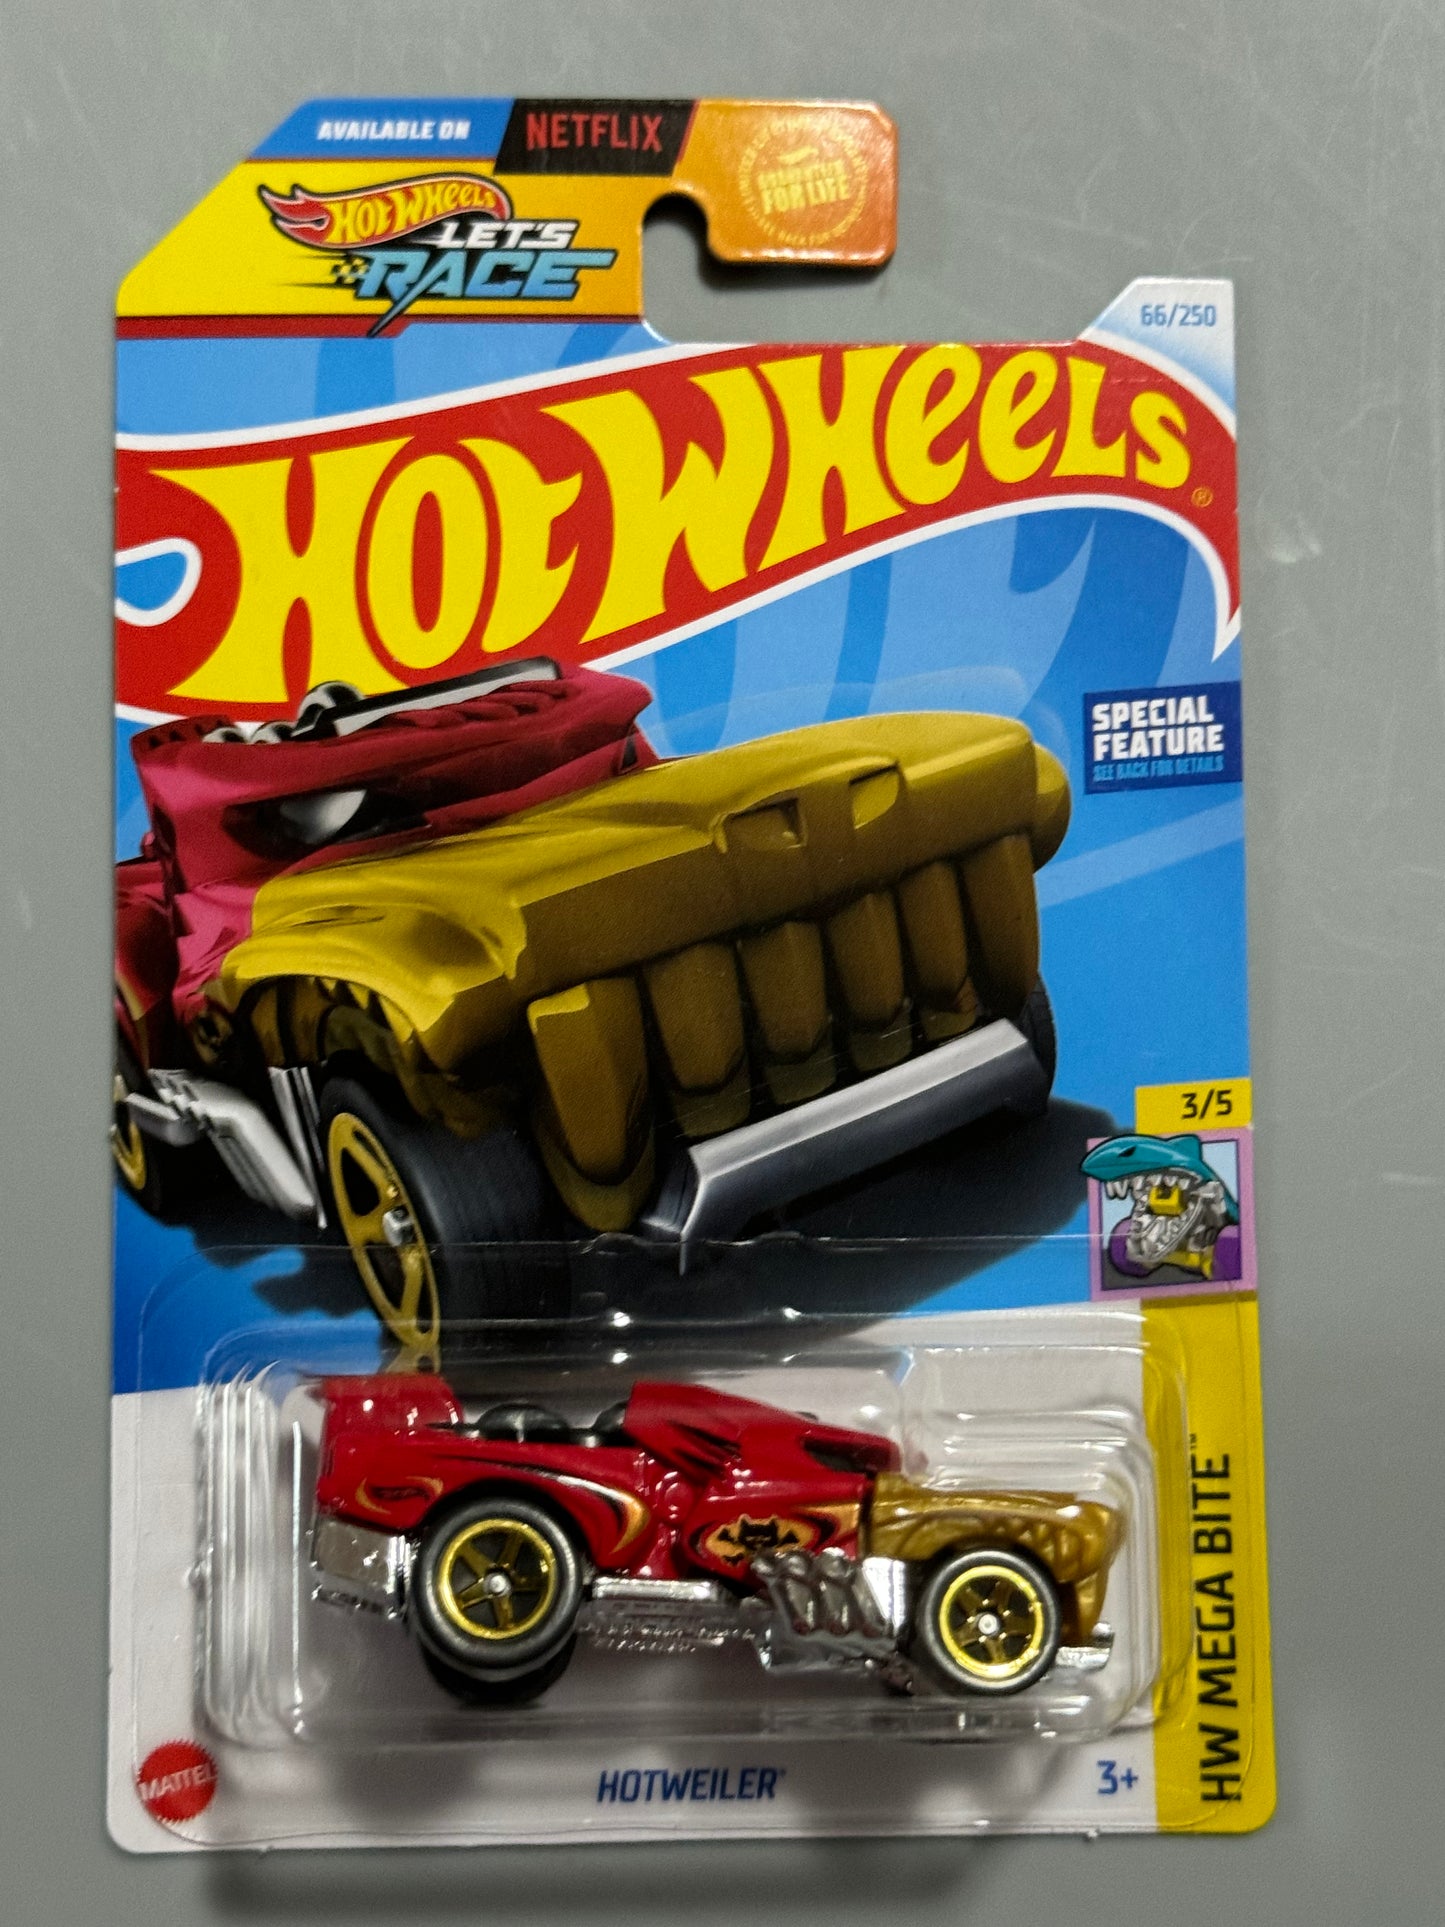 Hot Wheels 2024 Let's Race Red Hotweiler # 66/250 HW Mega Bite # 3/5 - H Case